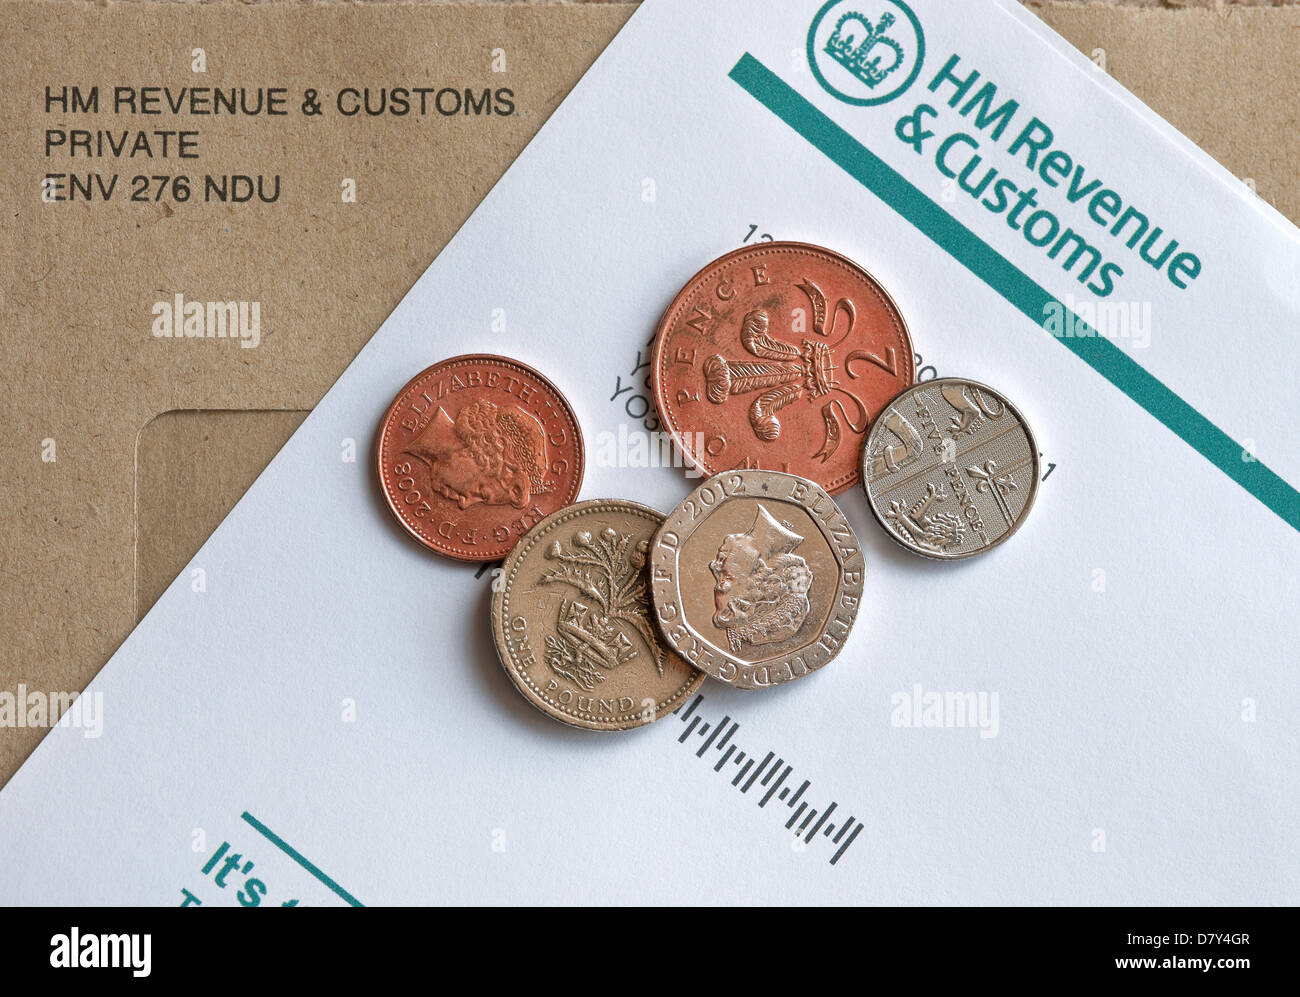 Gros plan de HMRC HM Revenue and Customs Self Assessment Notice pour remplir une déclaration d'impôt et pièces Angleterre Royaume-Uni GB Grande-Bretagne Banque D'Images